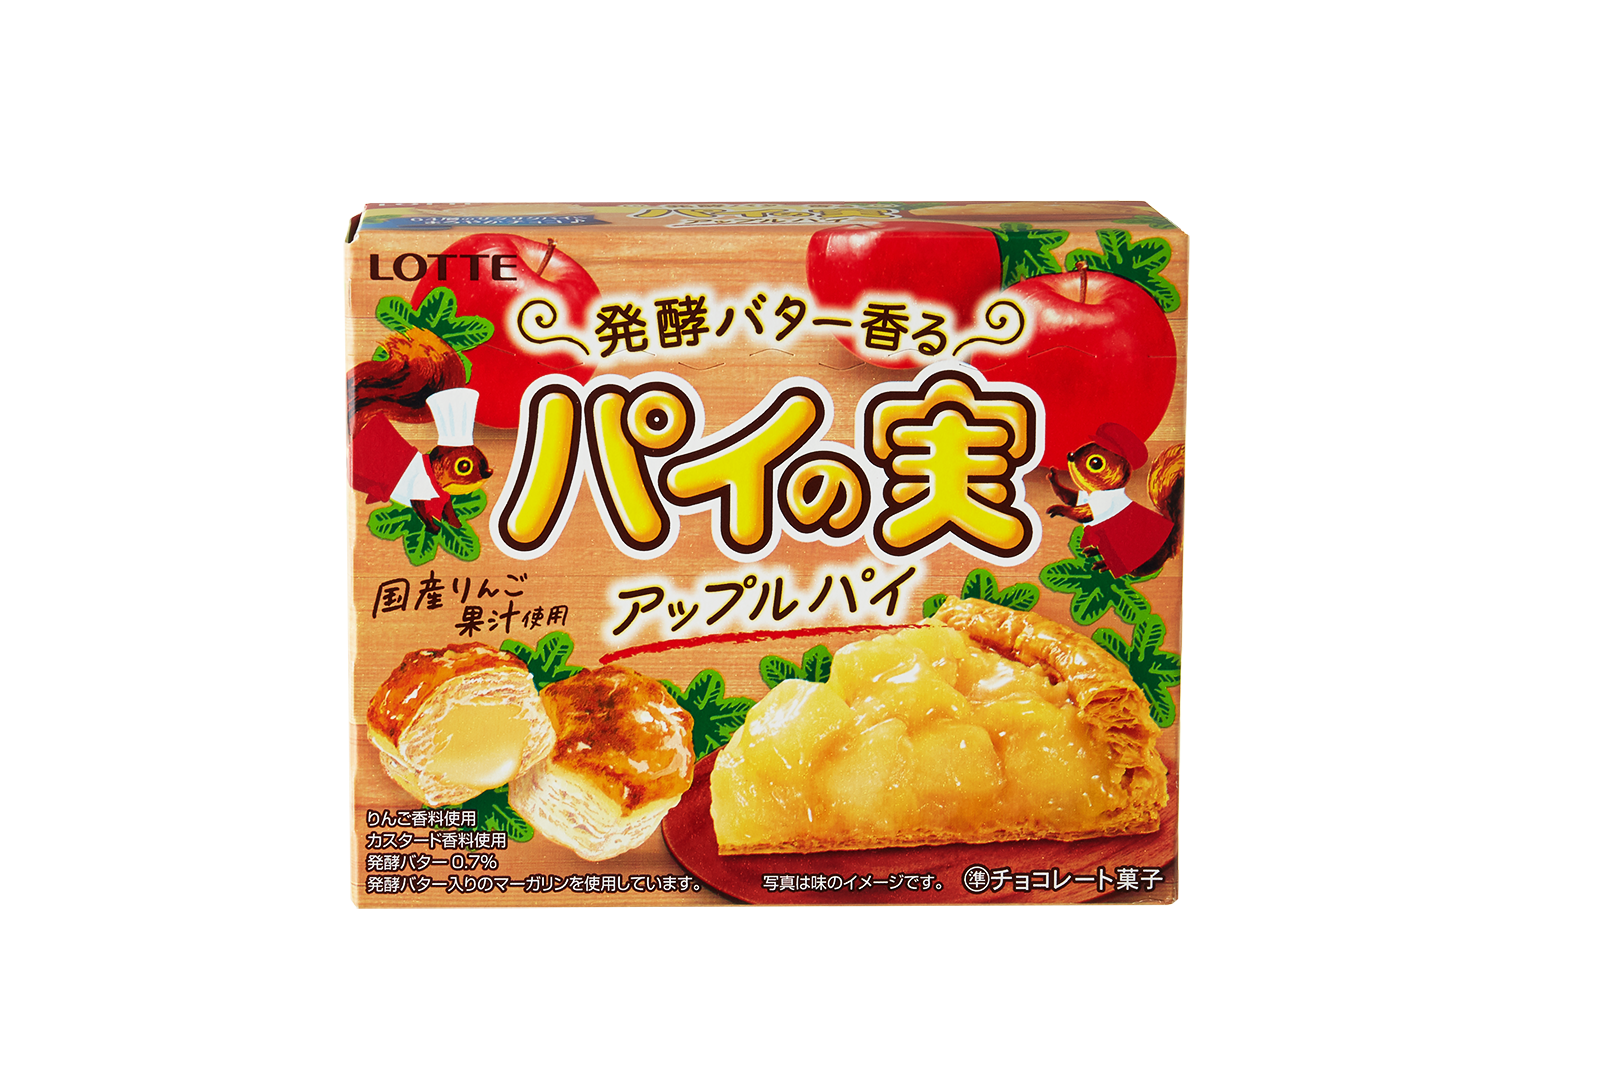 Japan San-X Sumikko Gurashi Bubble Seal Sticker - Corn Soup